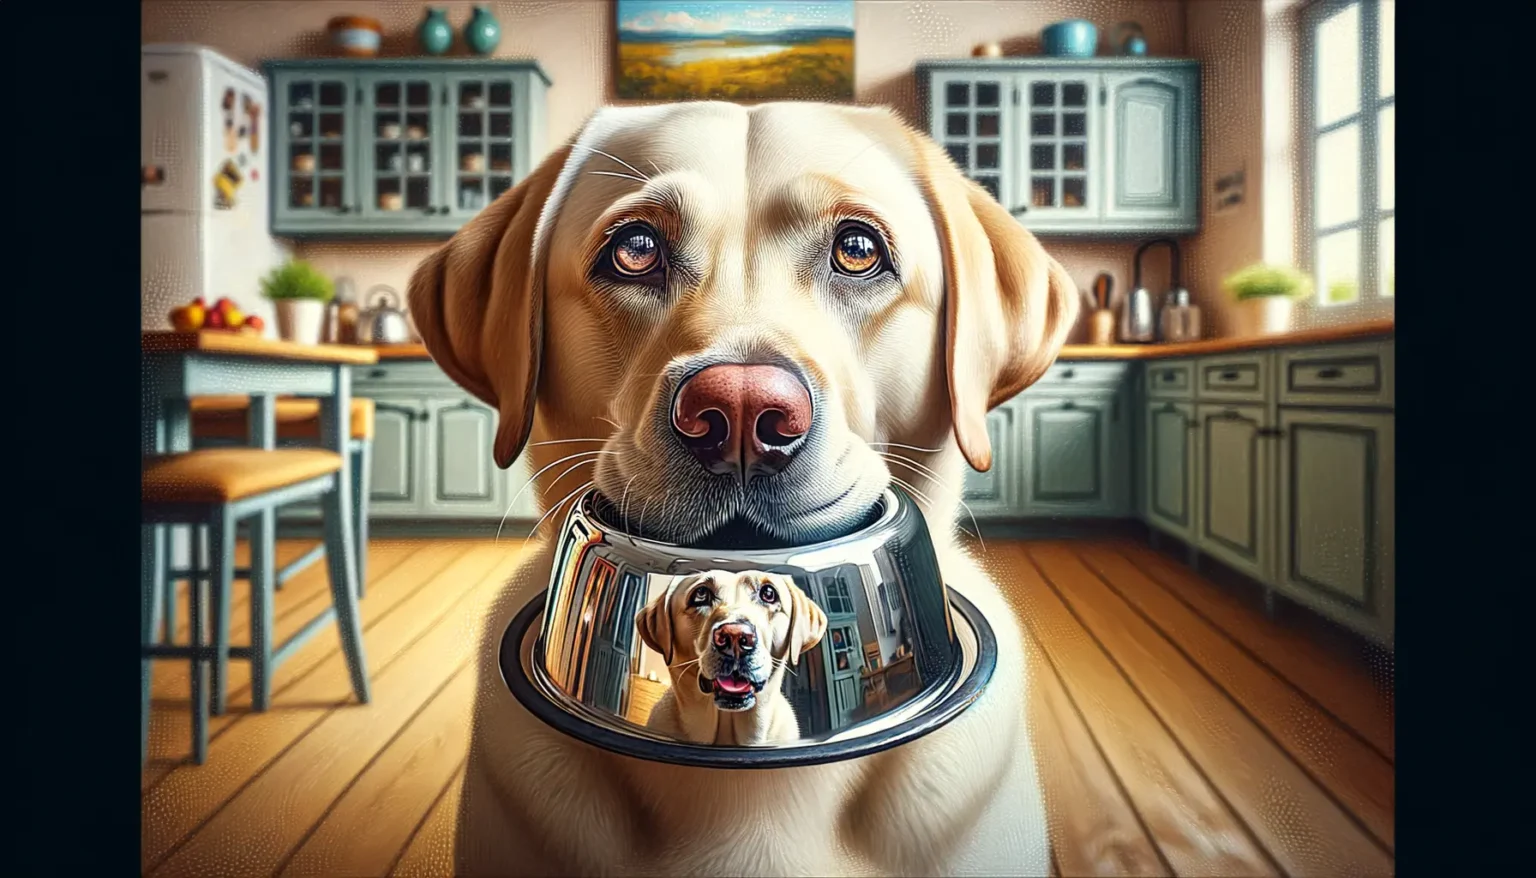 Ein gelber Labrador Retriever trägt einen metallenen Futternapf im Maul, der sein Spiegelbild zeigt, während er in einer gemütlichen Küche mit traditionellem Dekor steht.